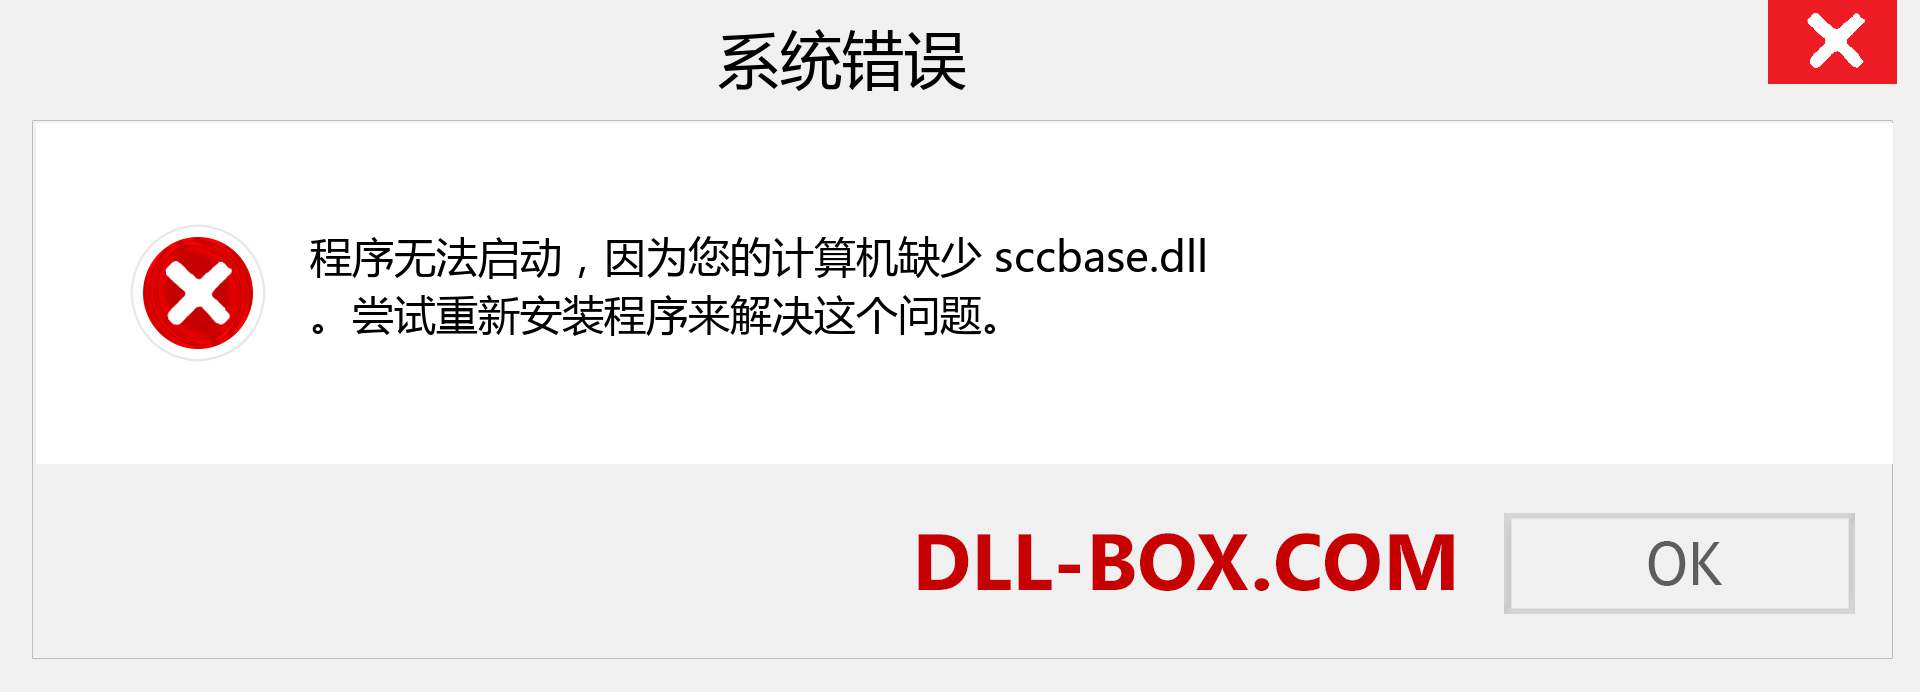 sccbase.dll 文件丢失？。 适用于 Windows 7、8、10 的下载 - 修复 Windows、照片、图像上的 sccbase dll 丢失错误